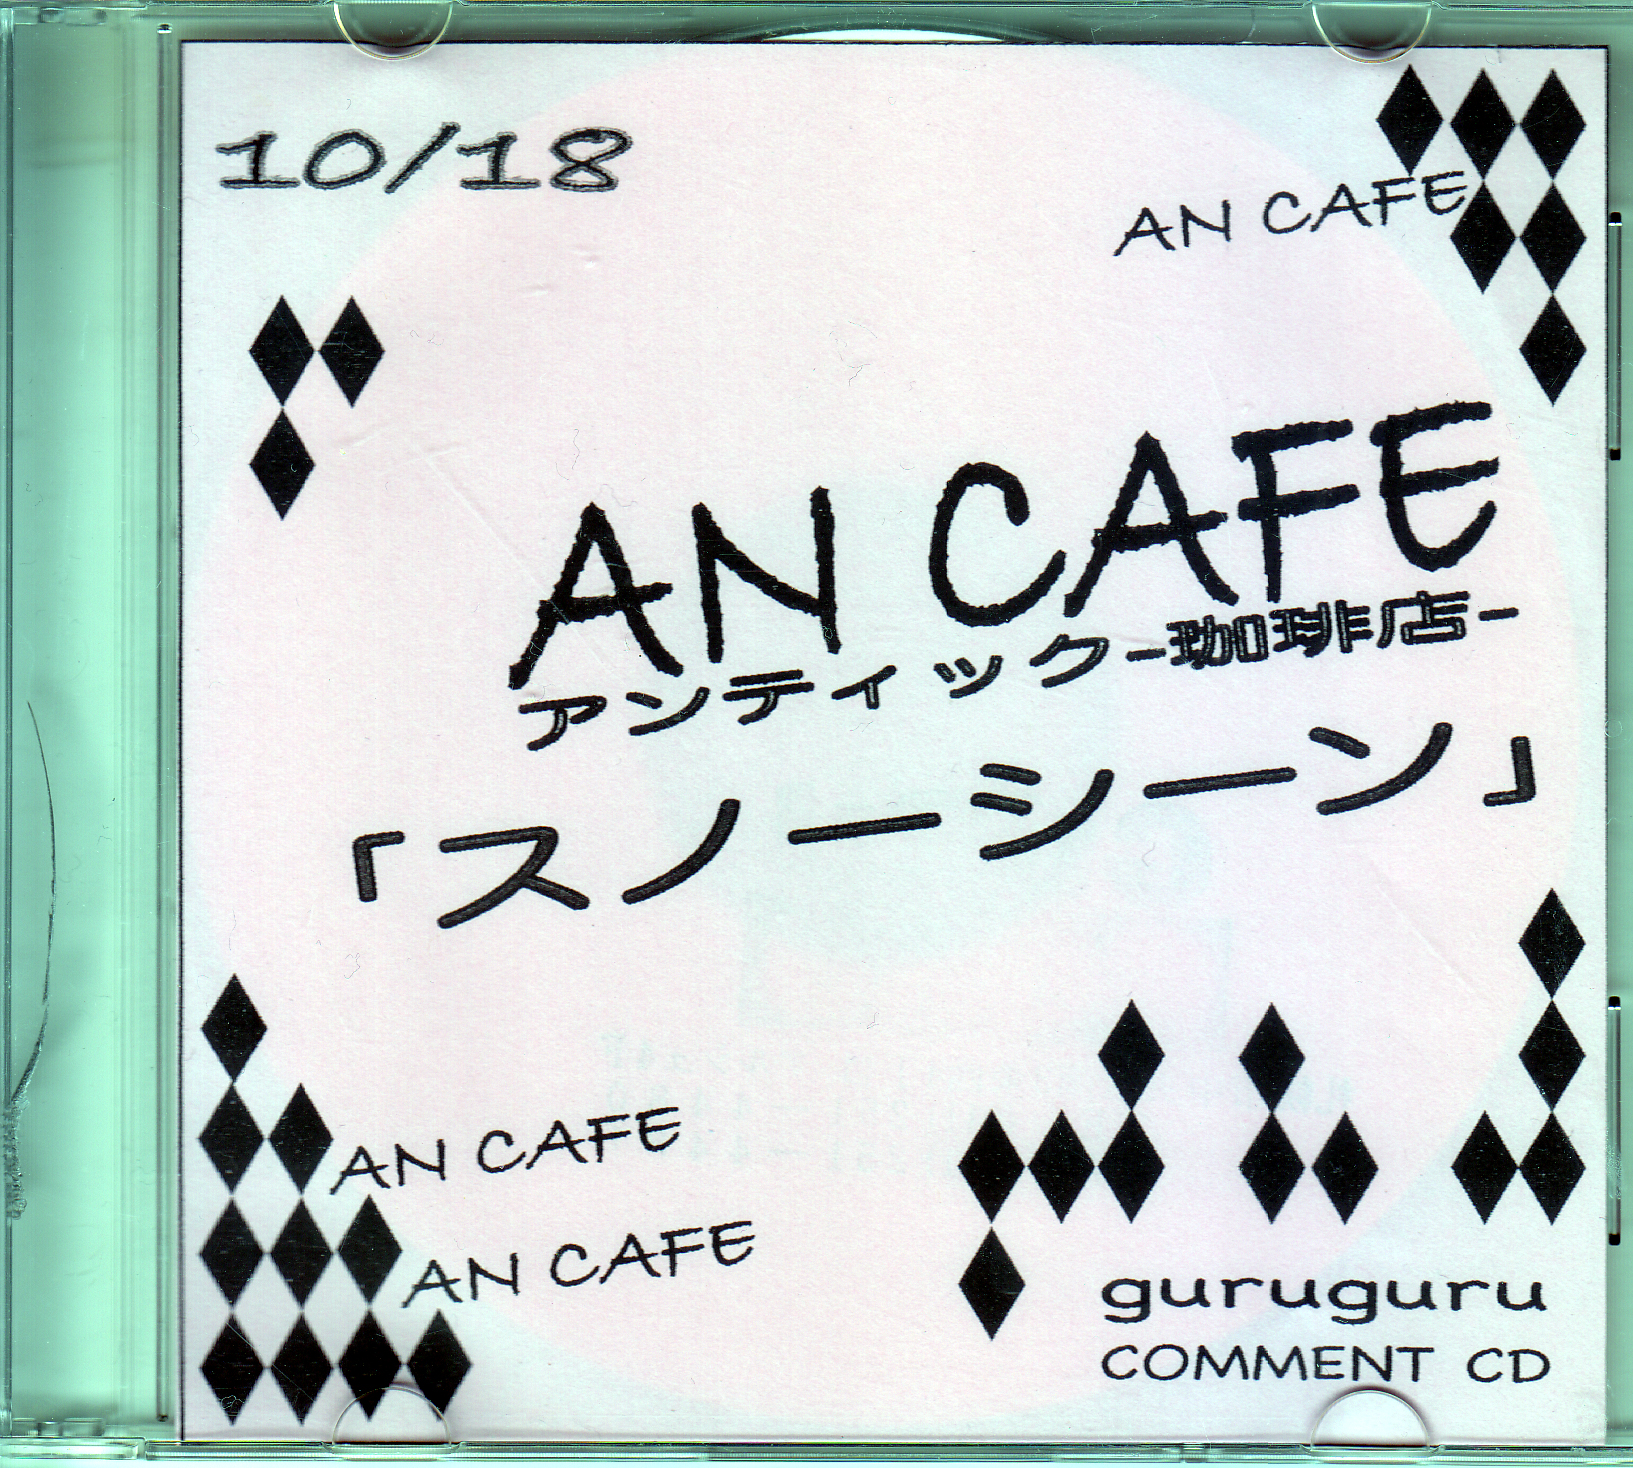 アンティック-珈琲店- ( アンティックカフェ )  の CD 【guruguru】「スノーシーン」コメントCD